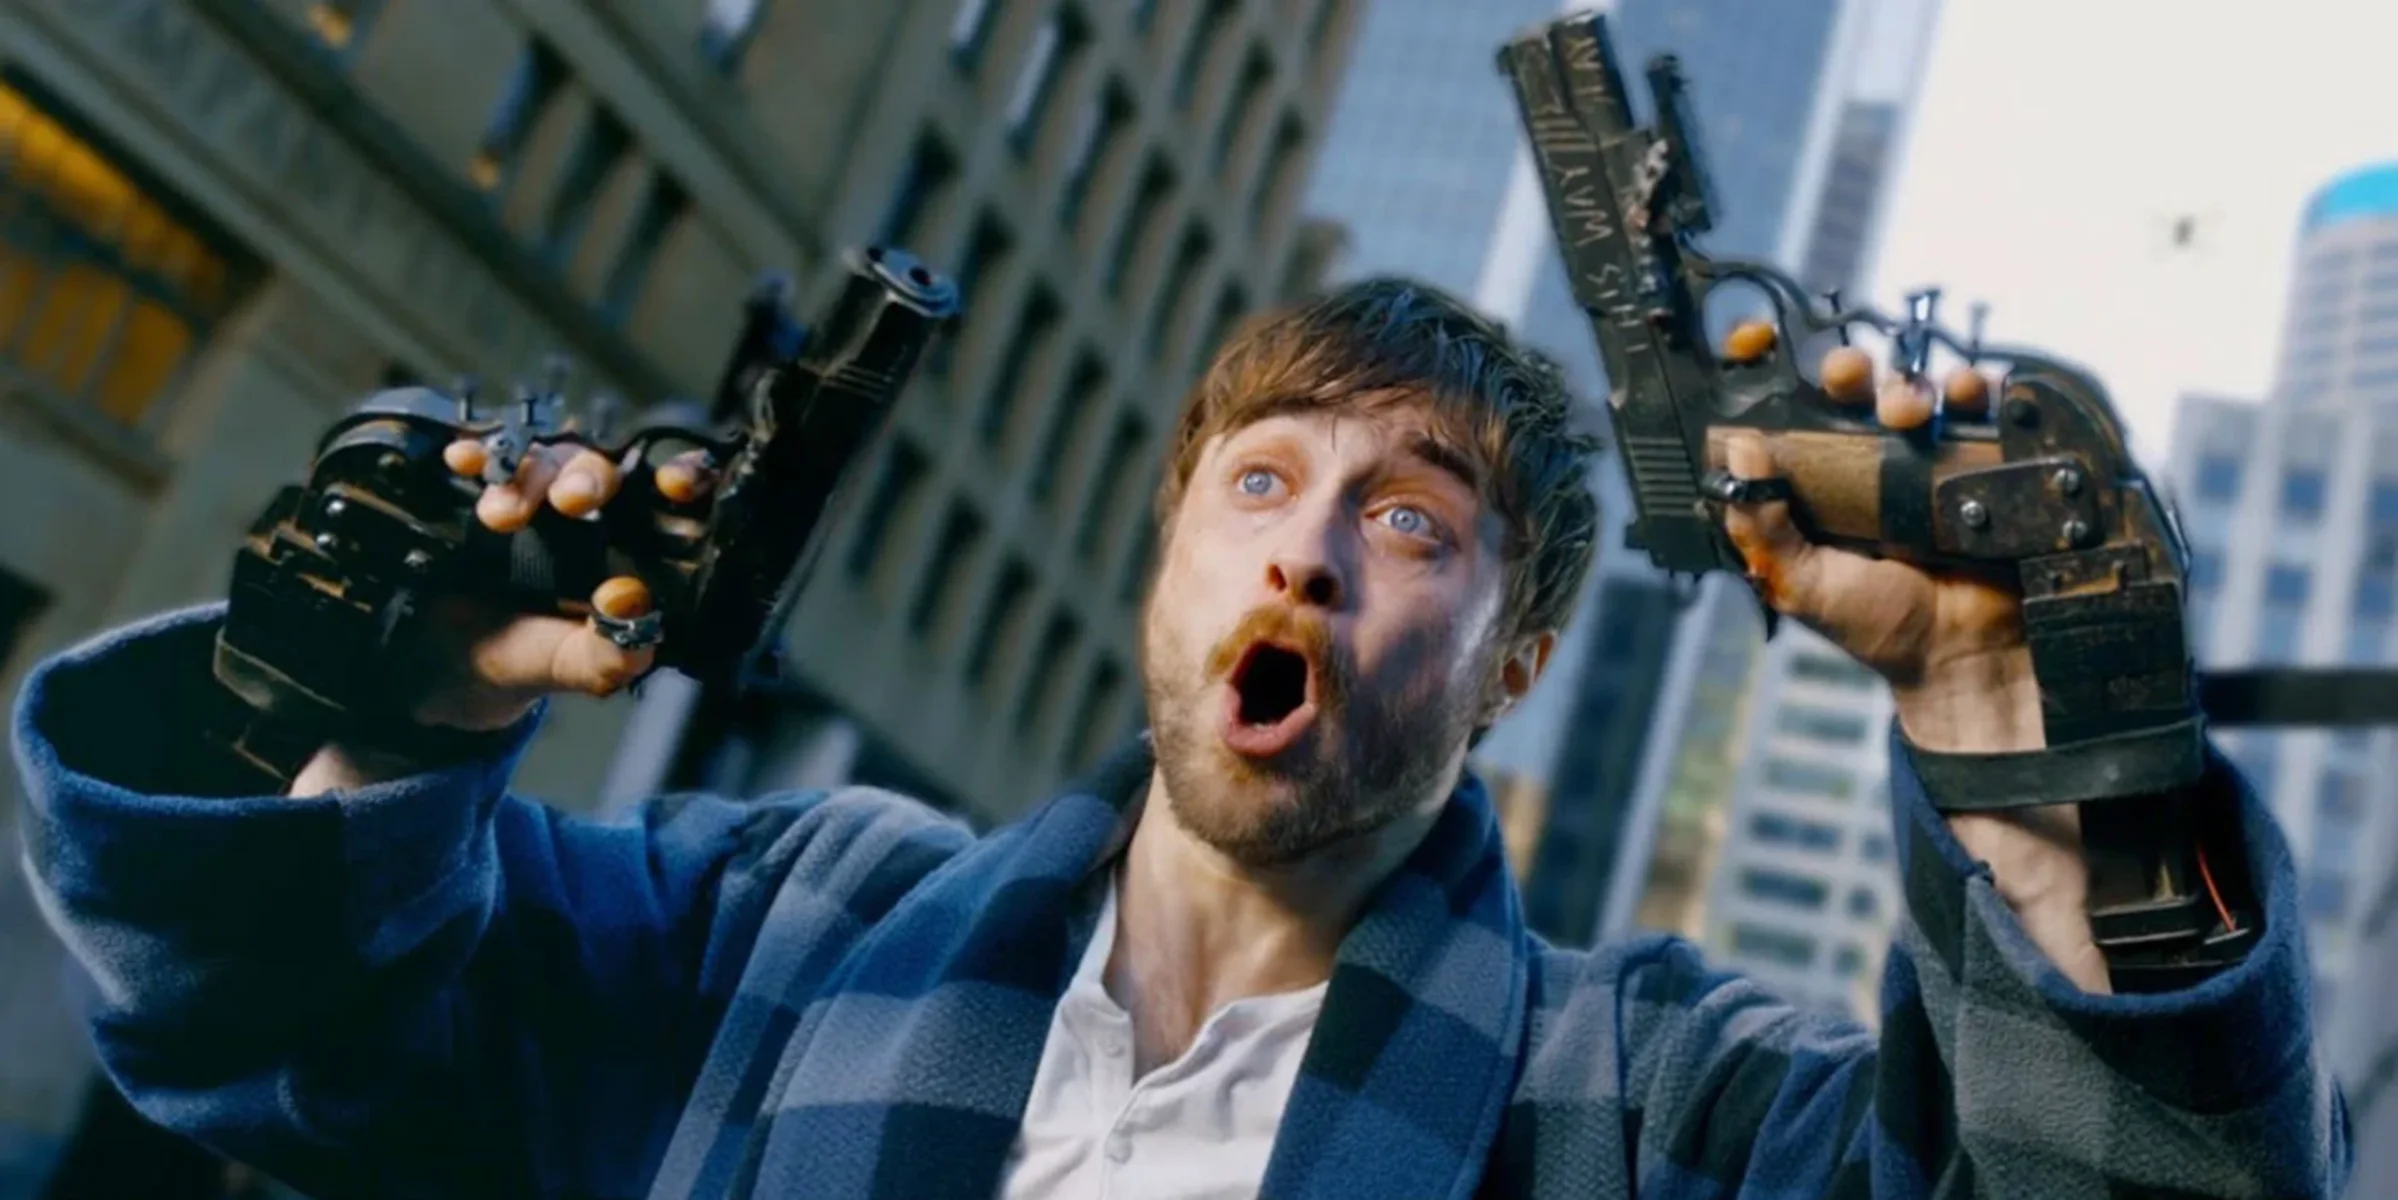 27 февраля в российских кинотеатрах стартовал фильм «Пушки Акимбо» (Guns Akimbo) с главной звездой «Гарри Поттера». Оказался ли фильм таким же безумным, что и его трейлеры?